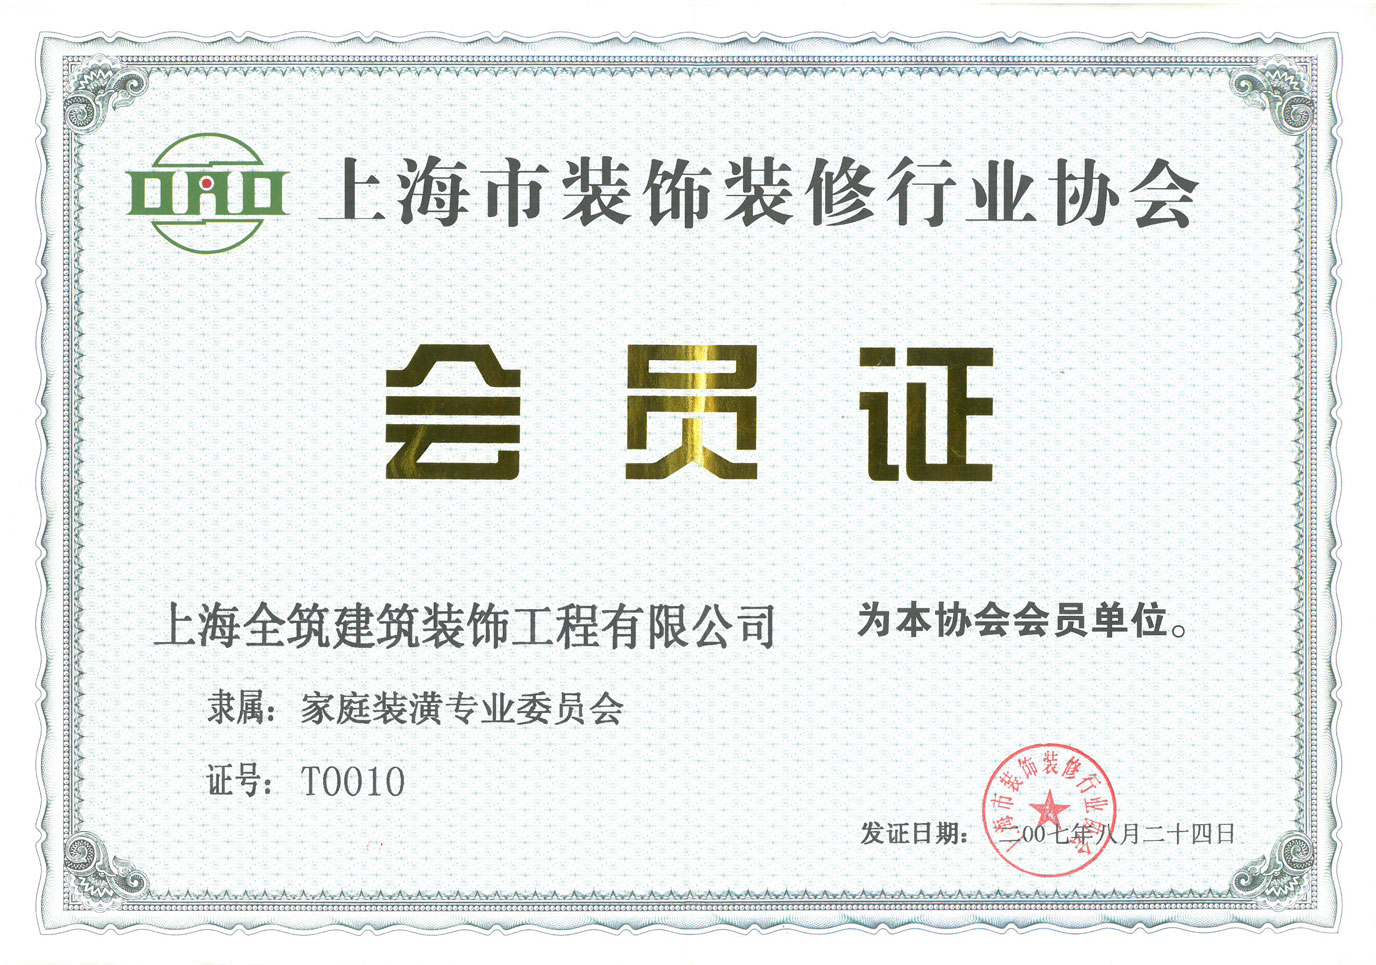 上海市装饰装修行业协会会员单位-装饰工程公司